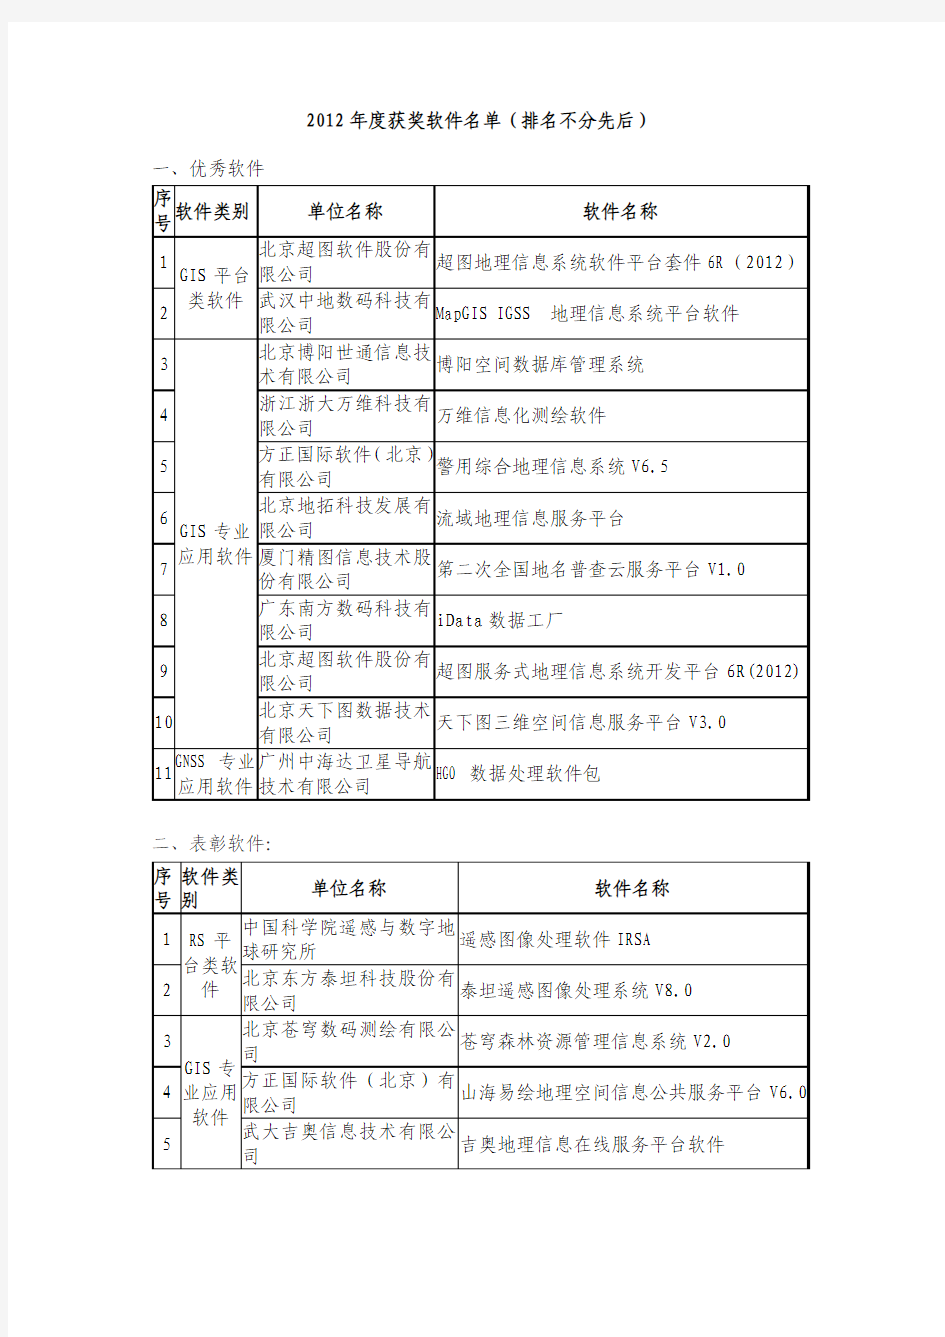 2012年中国国产空间信息系统软件测评结果